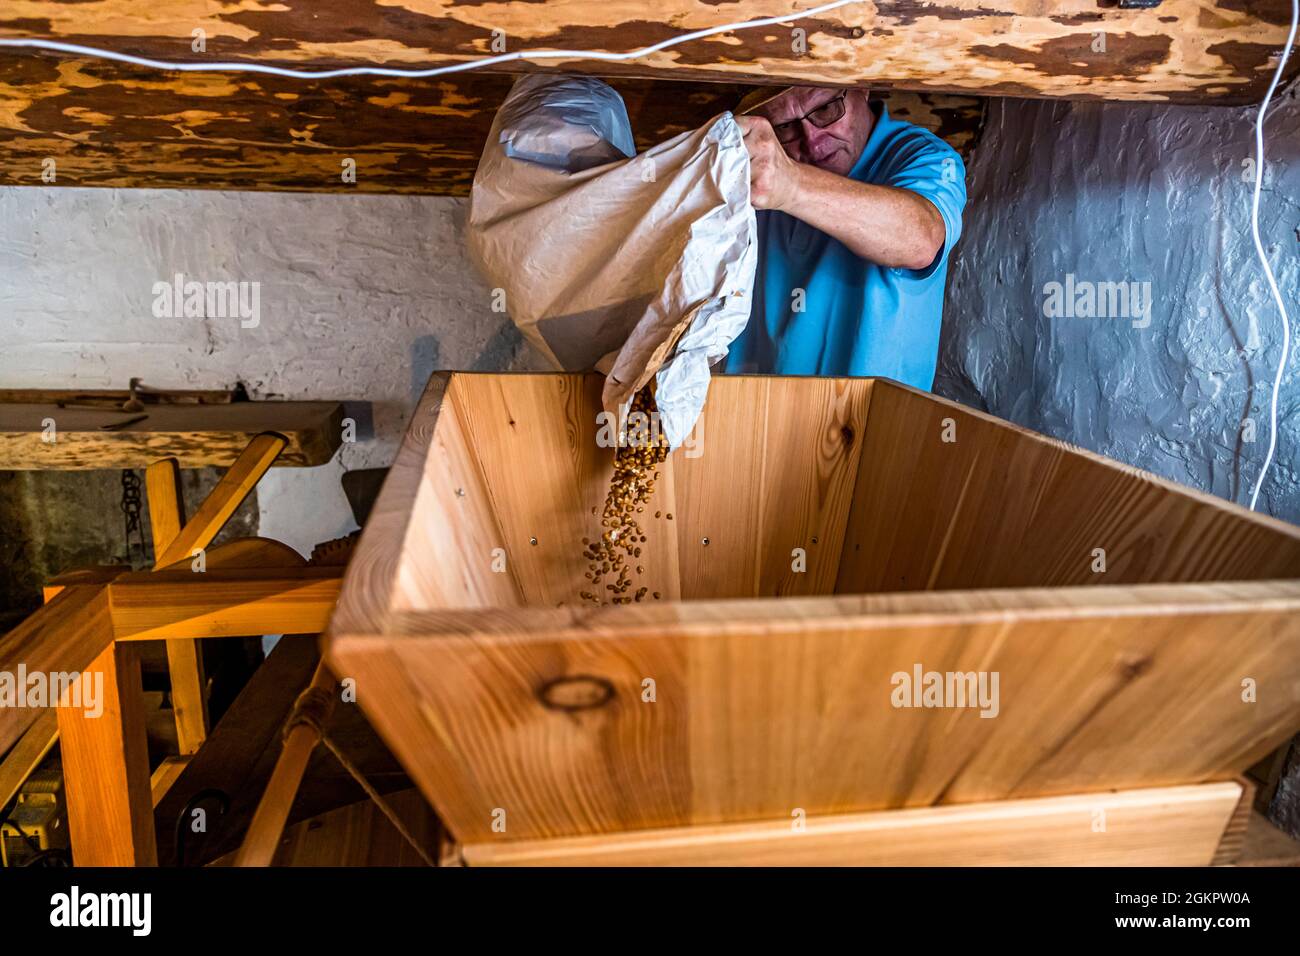 Ilario Galbani füllt den gerösteten Mais in den Trichter der Mühle. Die weißen Maiskörner tauchte während des Röstens auf und blitzen zwischen ihnen auf. Er bereitet die Wassermühle für den Mahlprozess vor, bei dem die gerösteten Maiskörner auf einem speziellen Mühlstein fein gemahlen werden. Circolo d'Onsernone, Schweiz Stockfoto